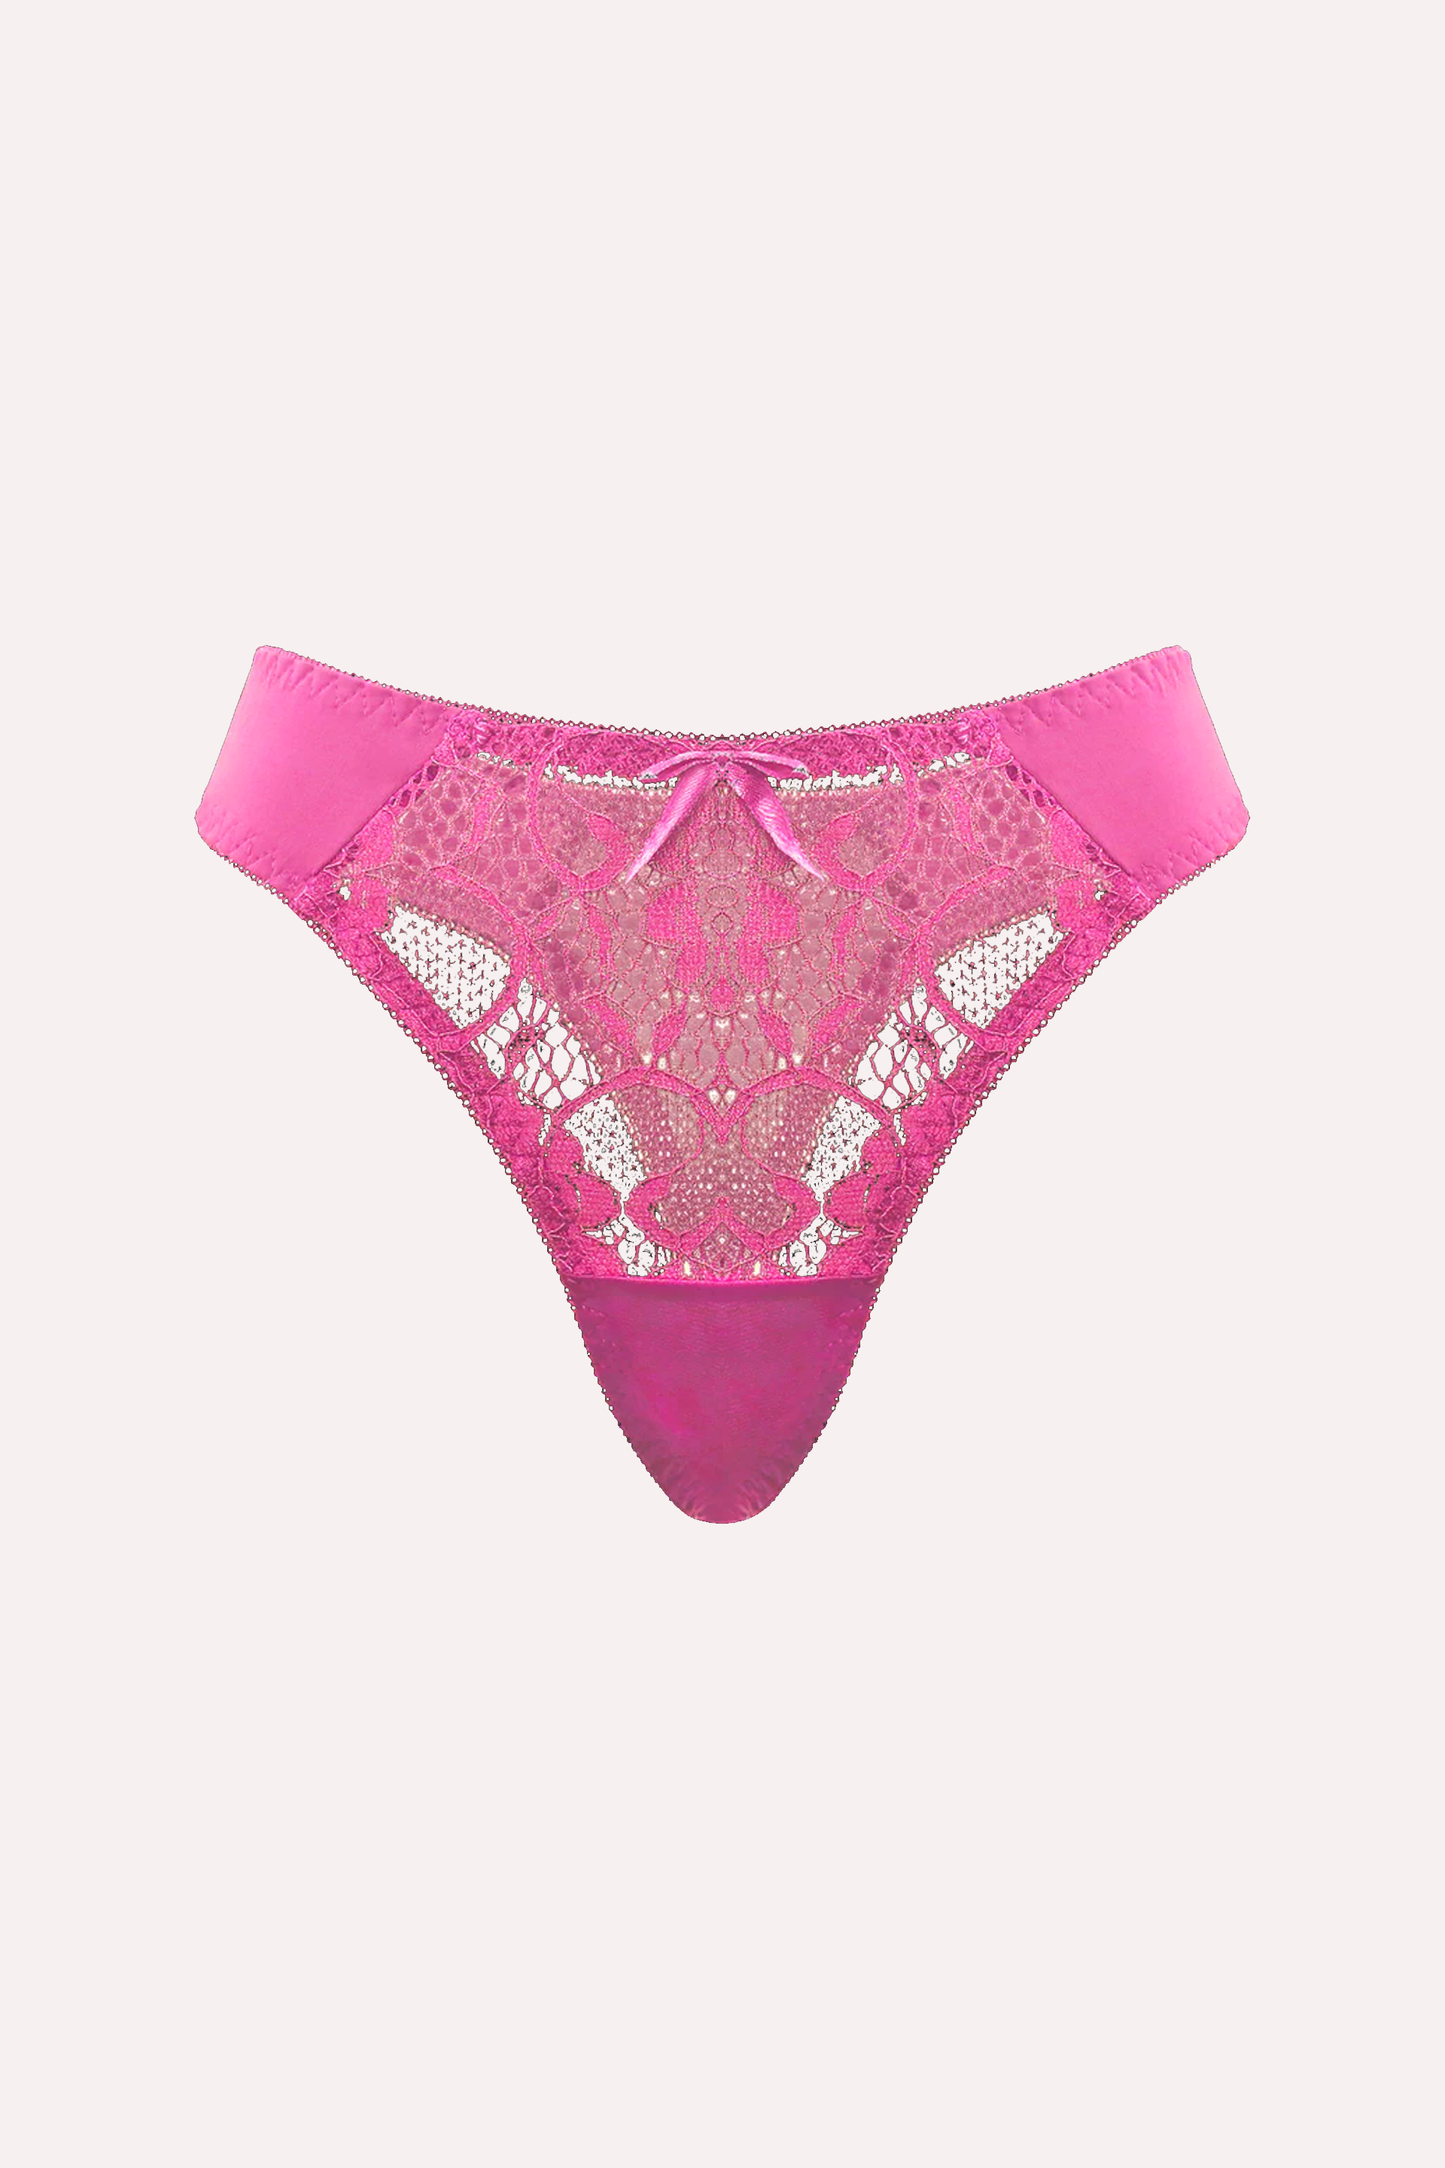 Mila - Sensational Thong Panty Balconette Lingerie